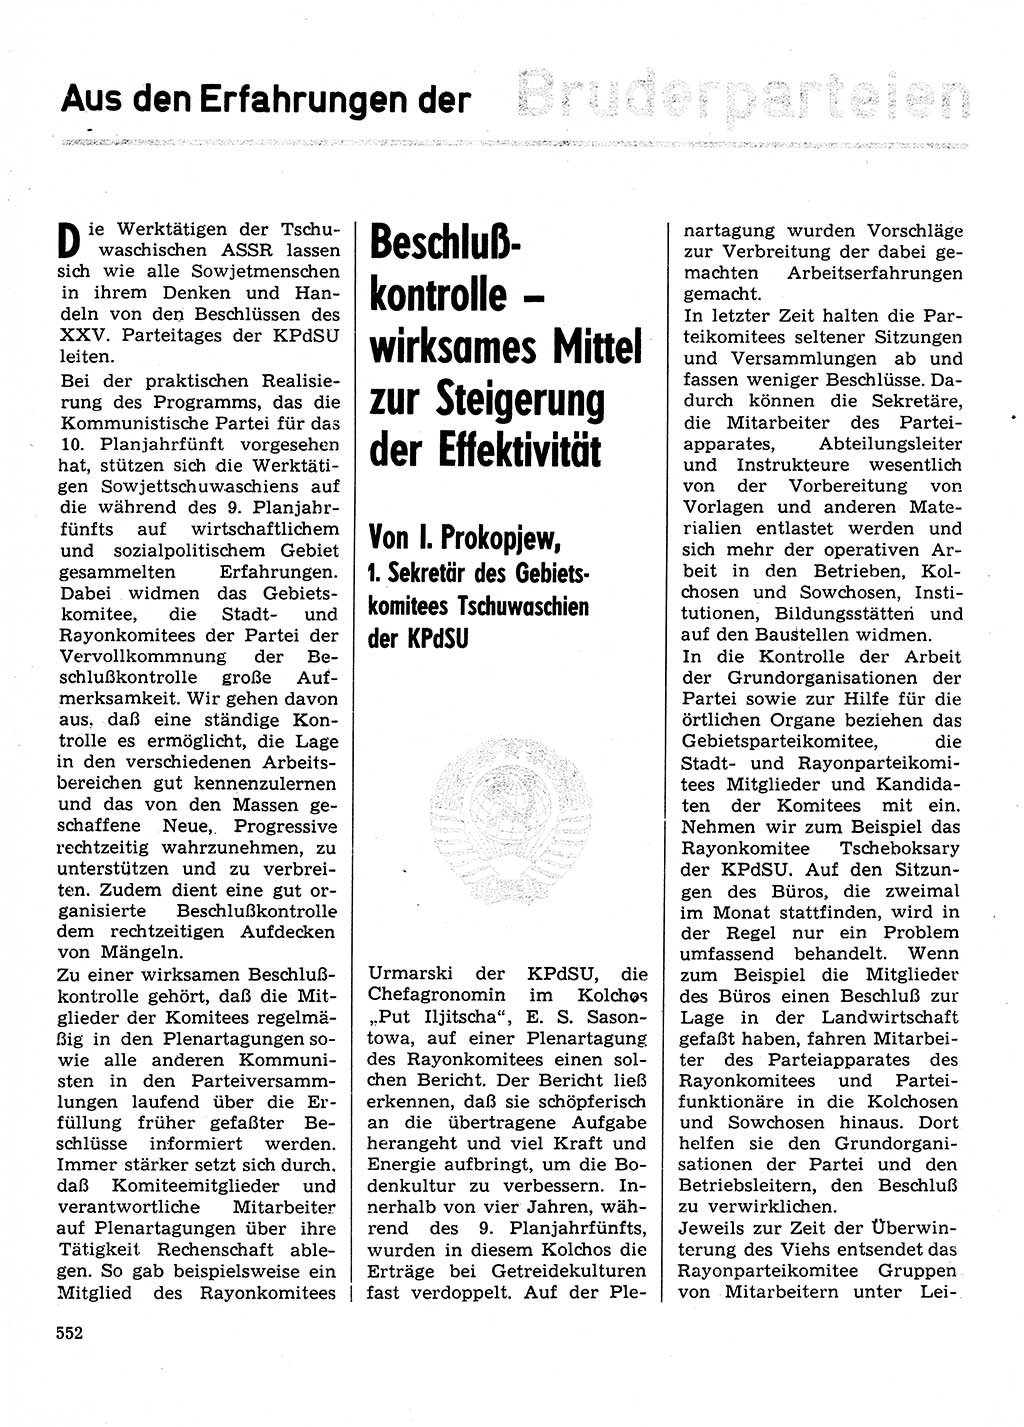 Neuer Weg (NW), Organ des Zentralkomitees (ZK) der SED (Sozialistische Einheitspartei Deutschlands) für Fragen des Parteilebens, 31. Jahrgang [Deutsche Demokratische Republik (DDR)] 1976, Seite 552 (NW ZK SED DDR 1976, S. 552)